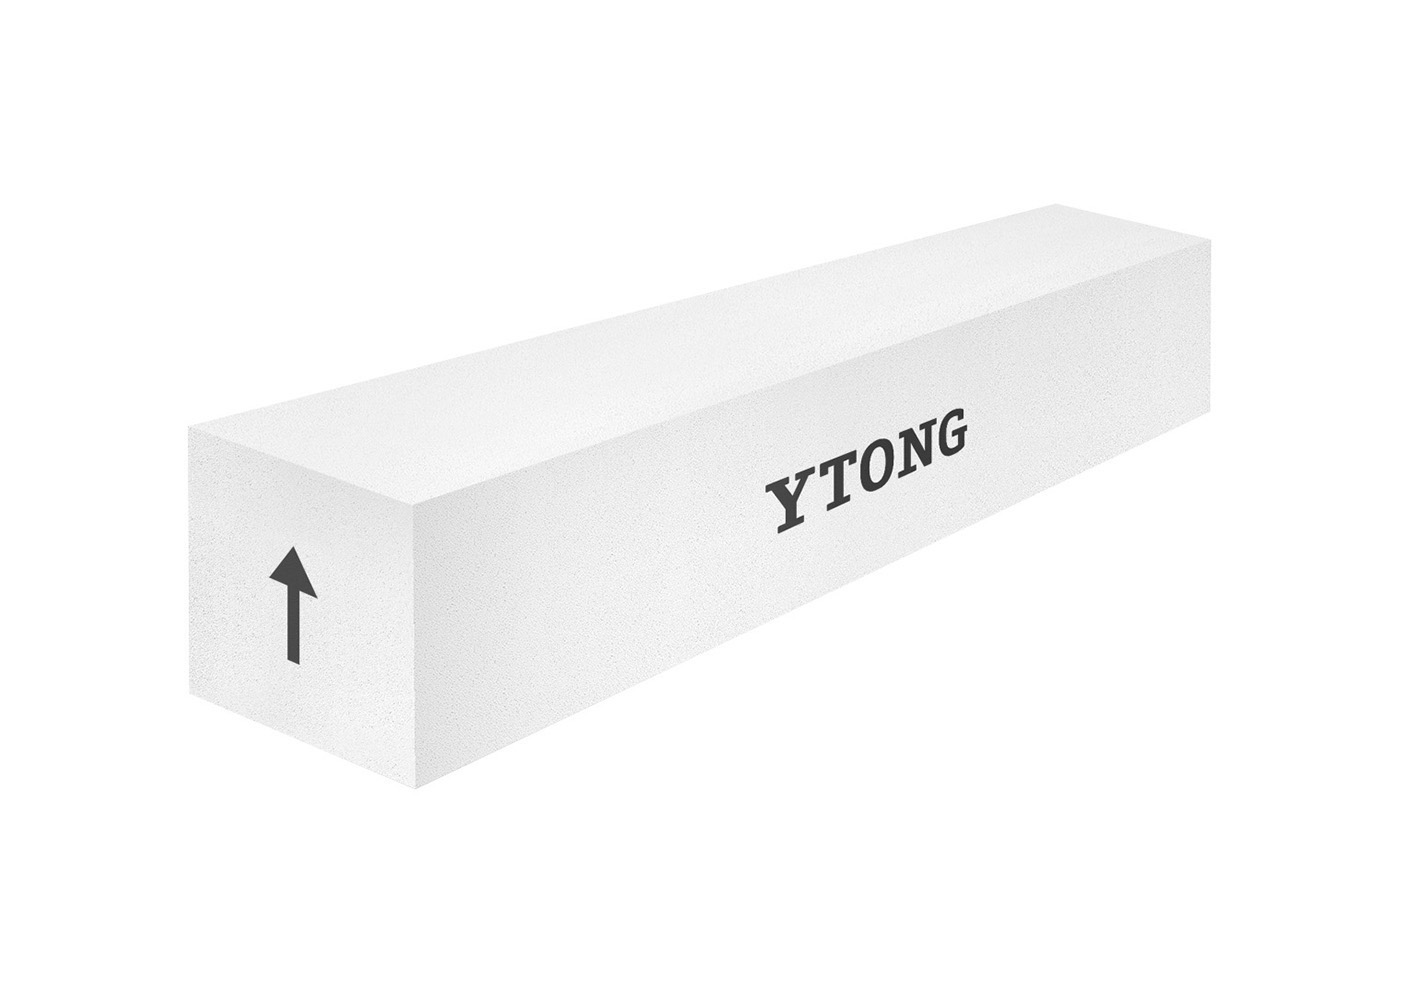 YTONG nosný překlad šířky 300 mm, délky 2000 mm